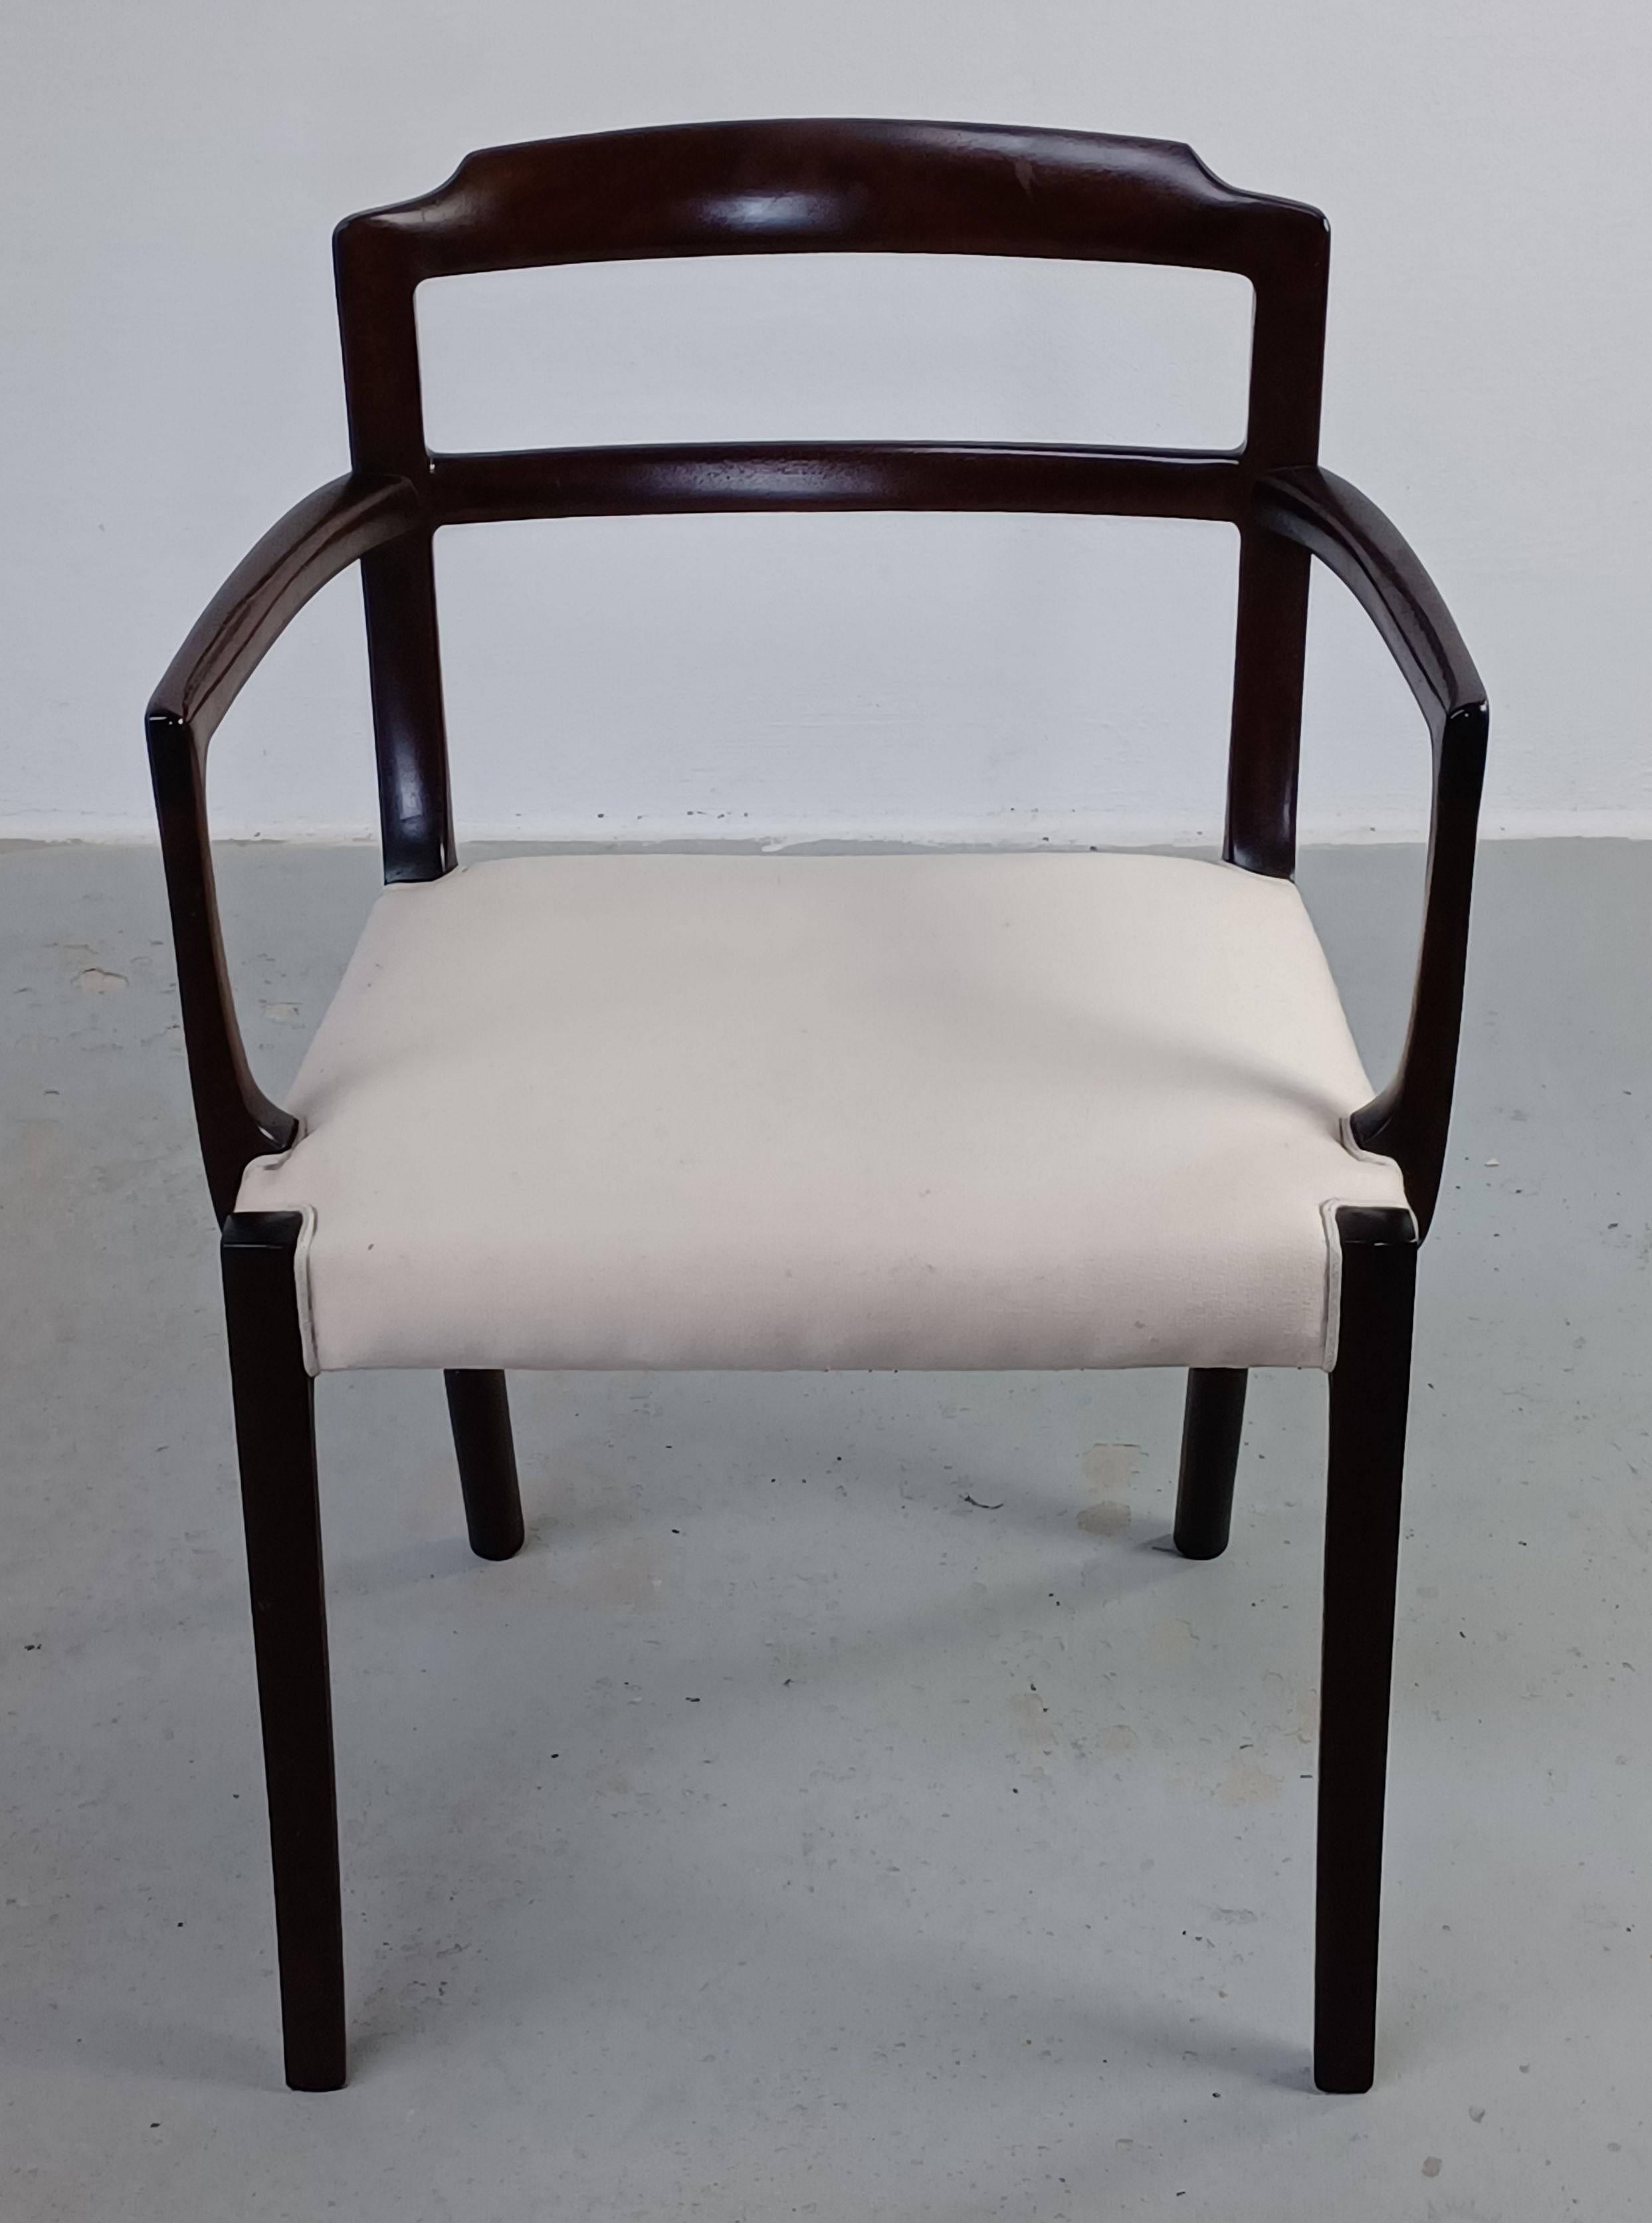 Chaise à accoudoirs en acajou danoise Ole Wanscher des années 1960, entièrement restaurée, tapisserie sur mesure

La chaise présente un élégant fauteuil moderne du milieu du siècle, bien conçu et bien fabriqué, avec le sens bien développé d'Ole